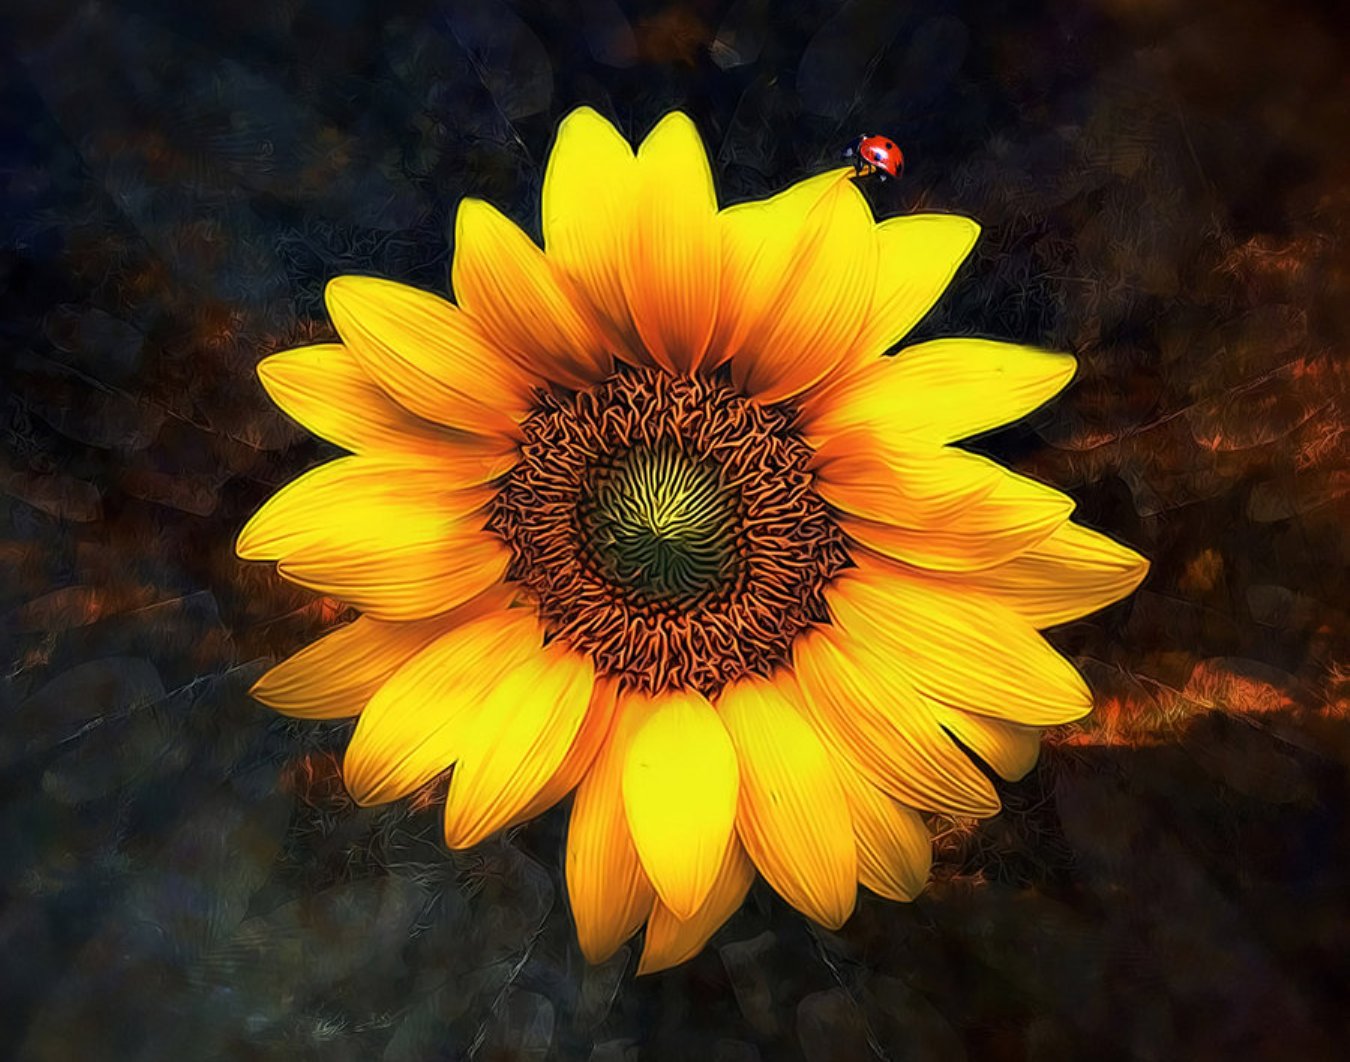 Descarga gratuita de fondo de pantalla para móvil de Girasol, Flores, Tierra/naturaleza.